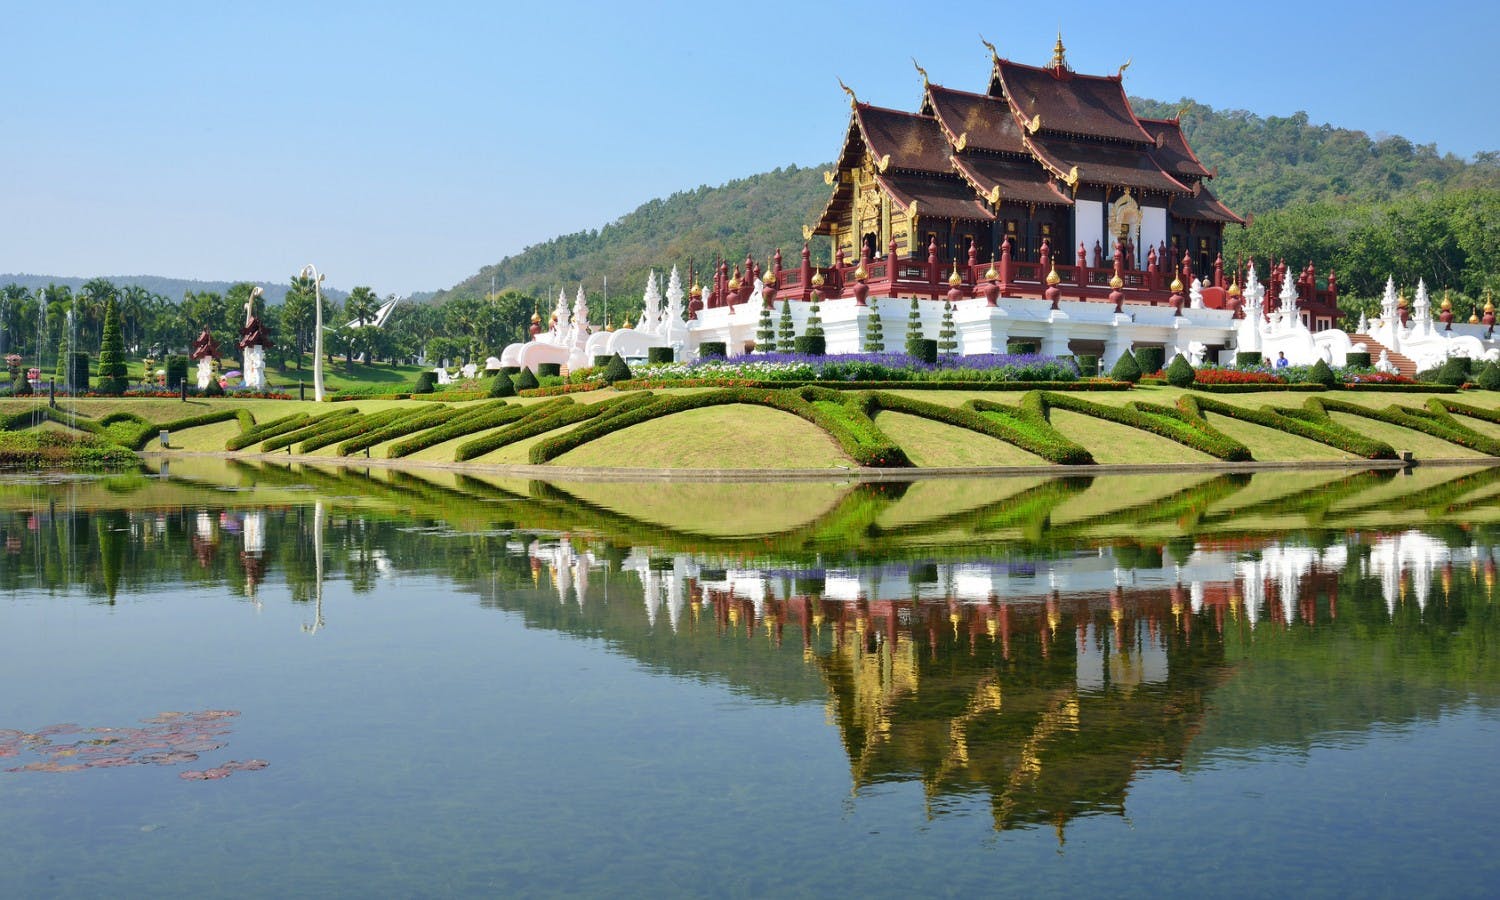 Chiang Mai tourism